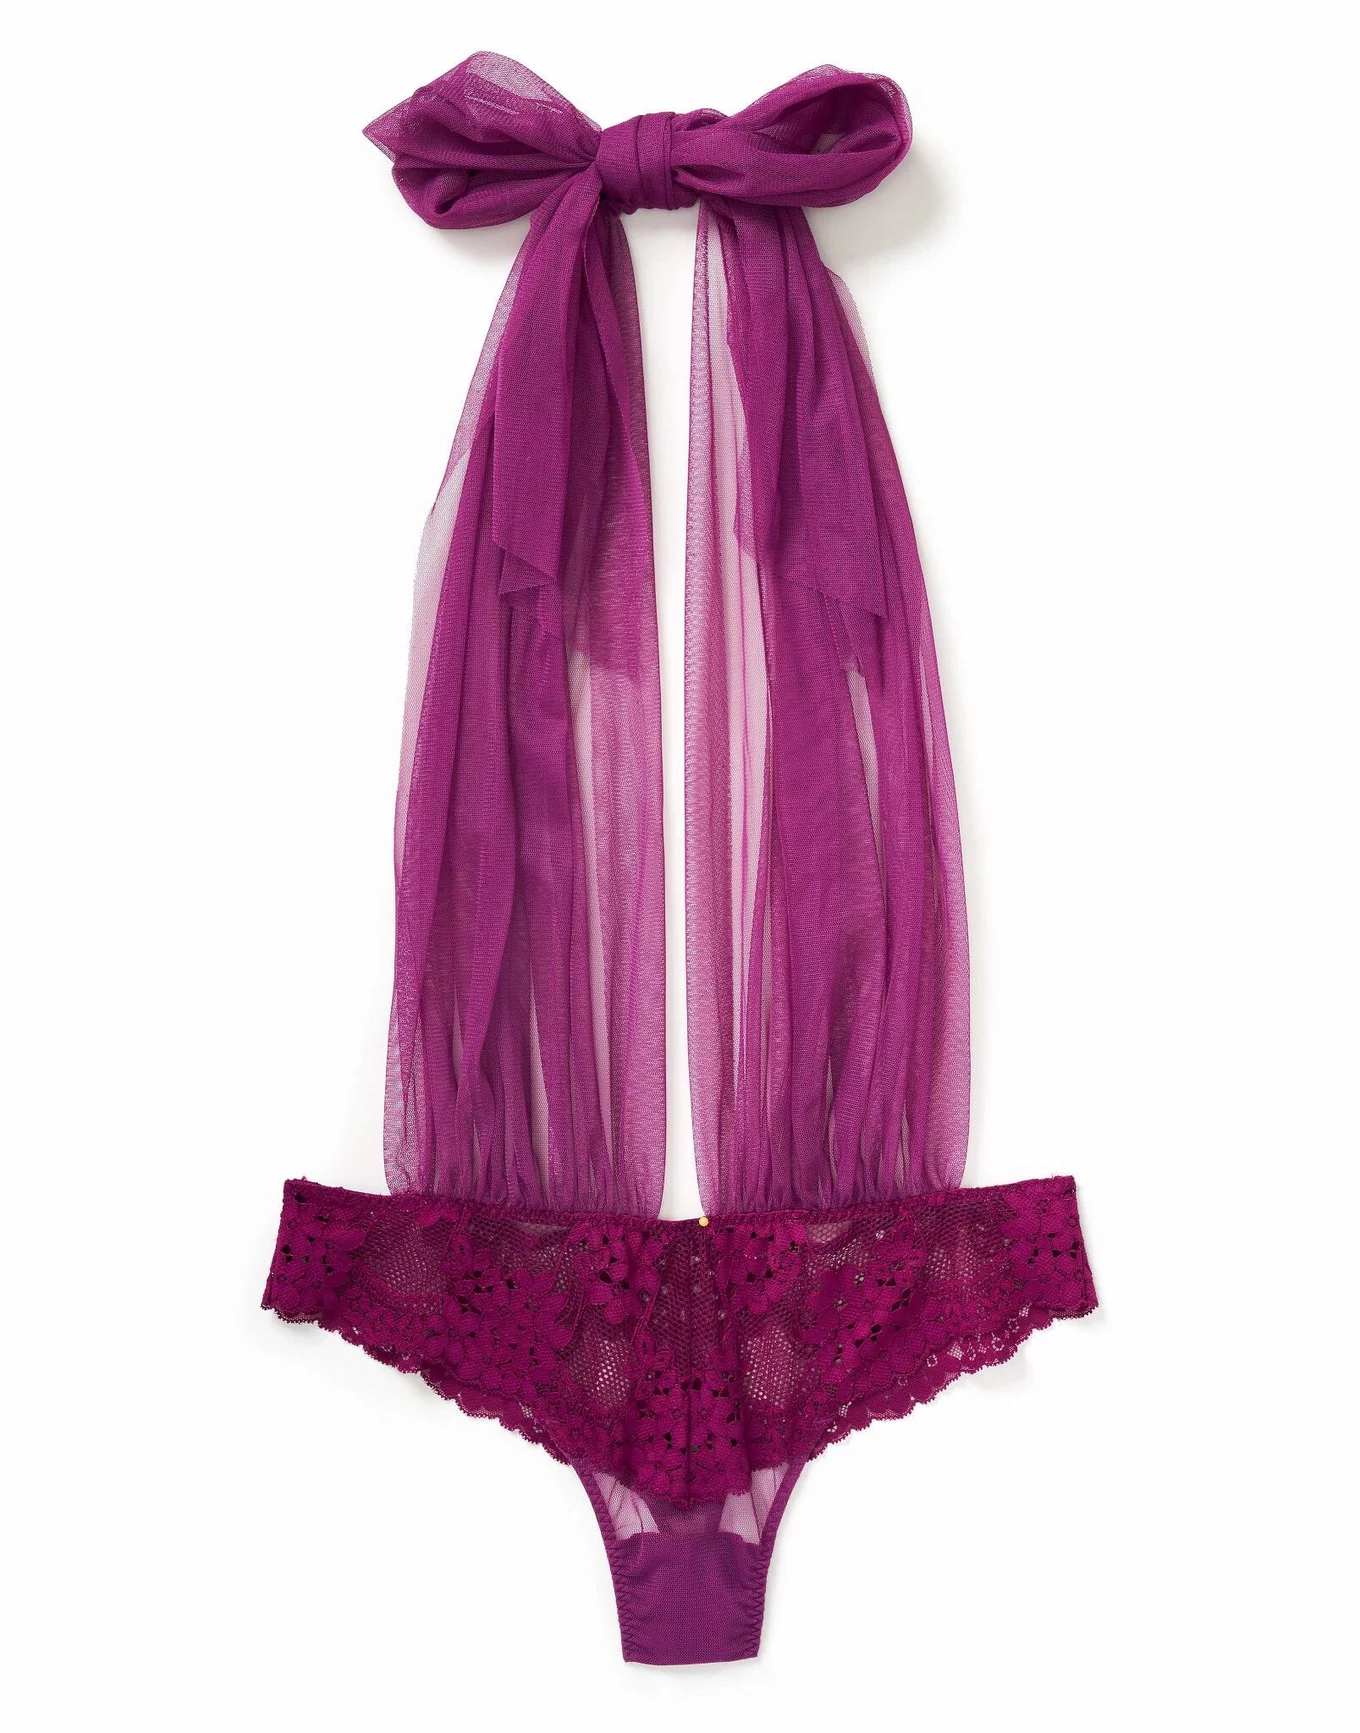 Plus Size LIMITED COLLECTION Plum Purple Lace Bodysuit